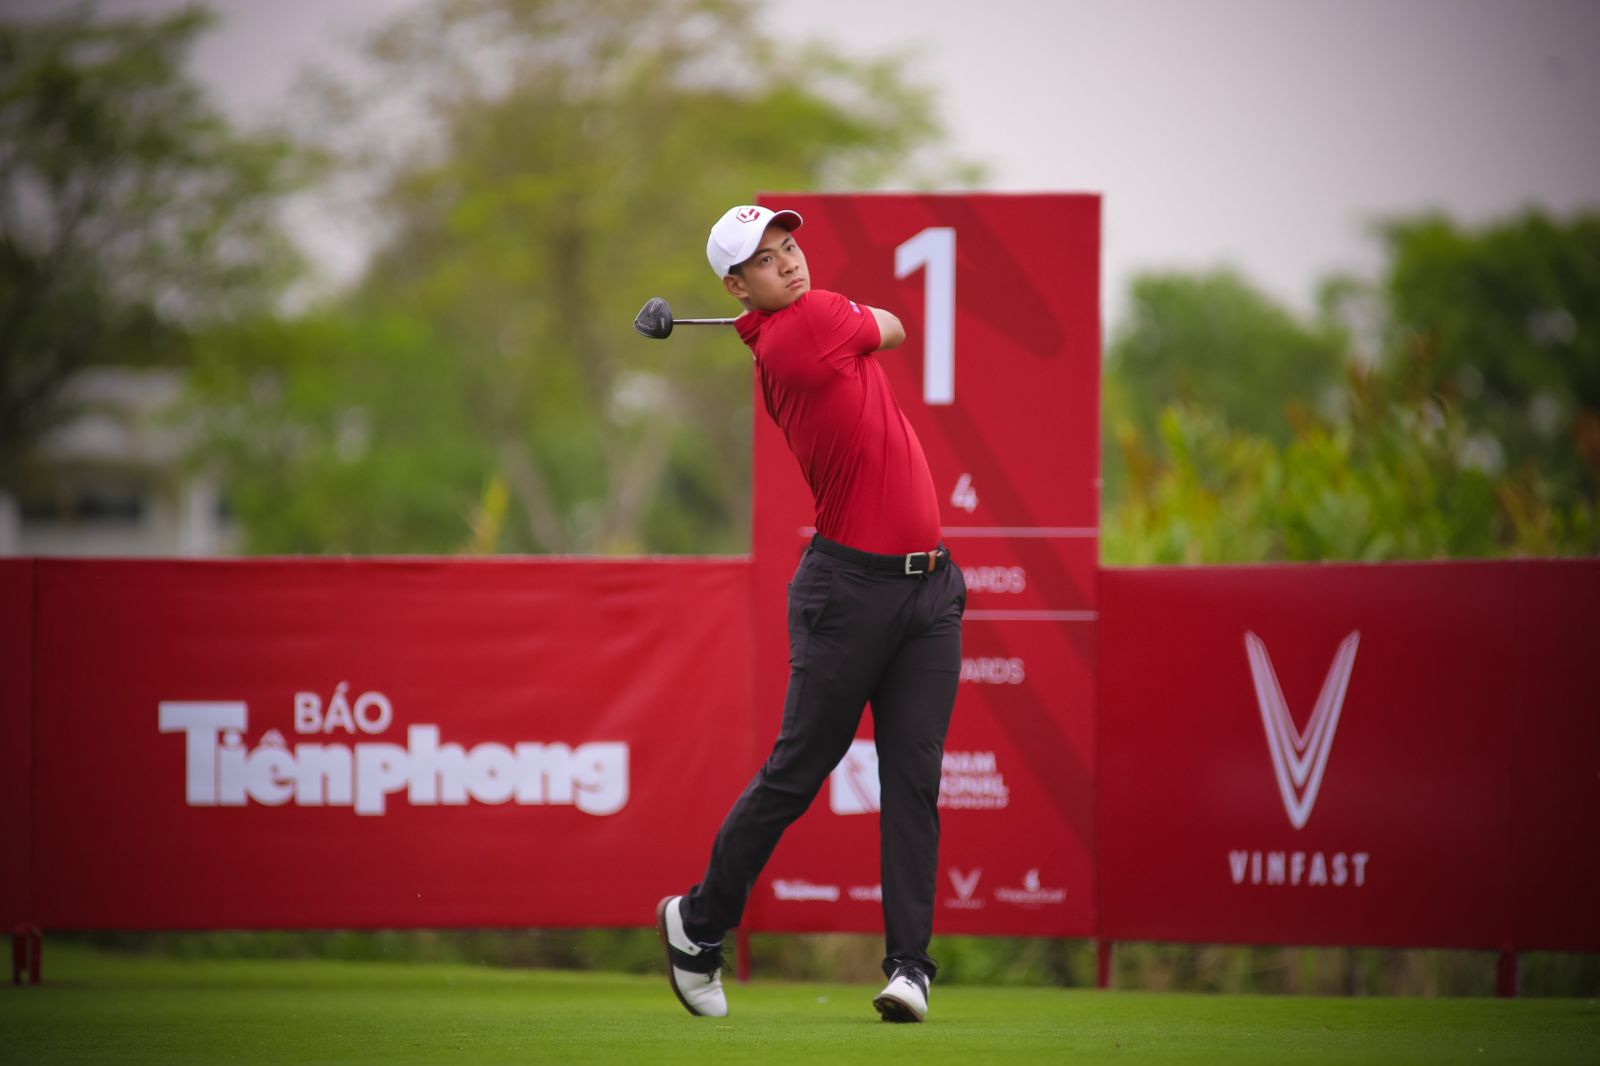 VGS Holding hiện có 70.000 hội viên và là đơn vị tổ chức hệ thống giải golf chuyên nghiệp VGA Tour tại Việt Nam